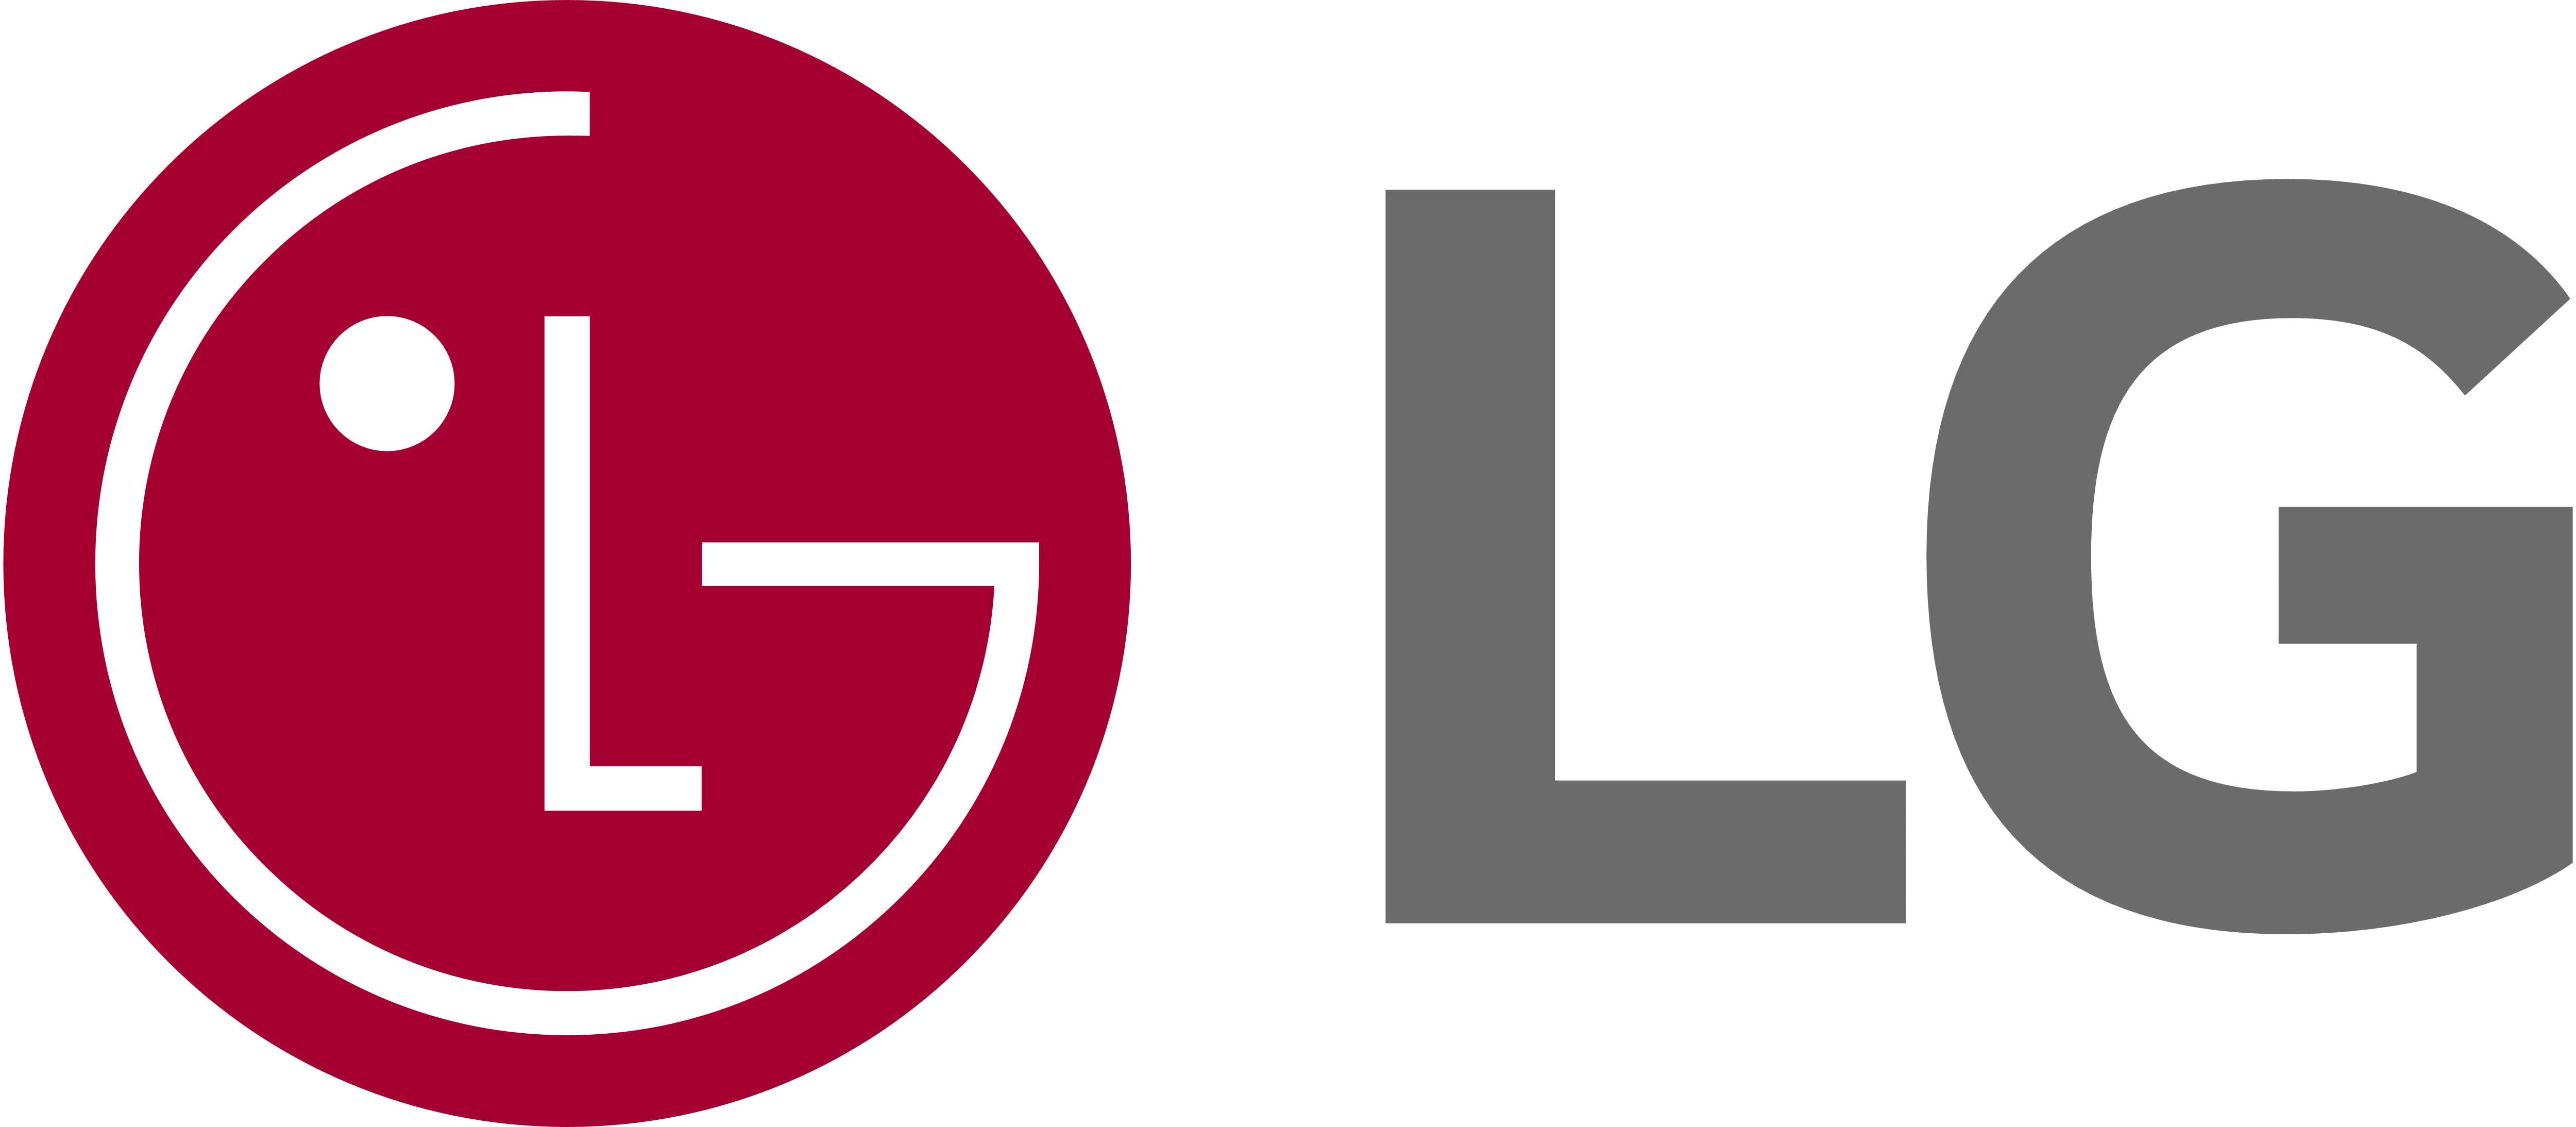 LG Fridge Repair Company, GE Refrigerator Repair